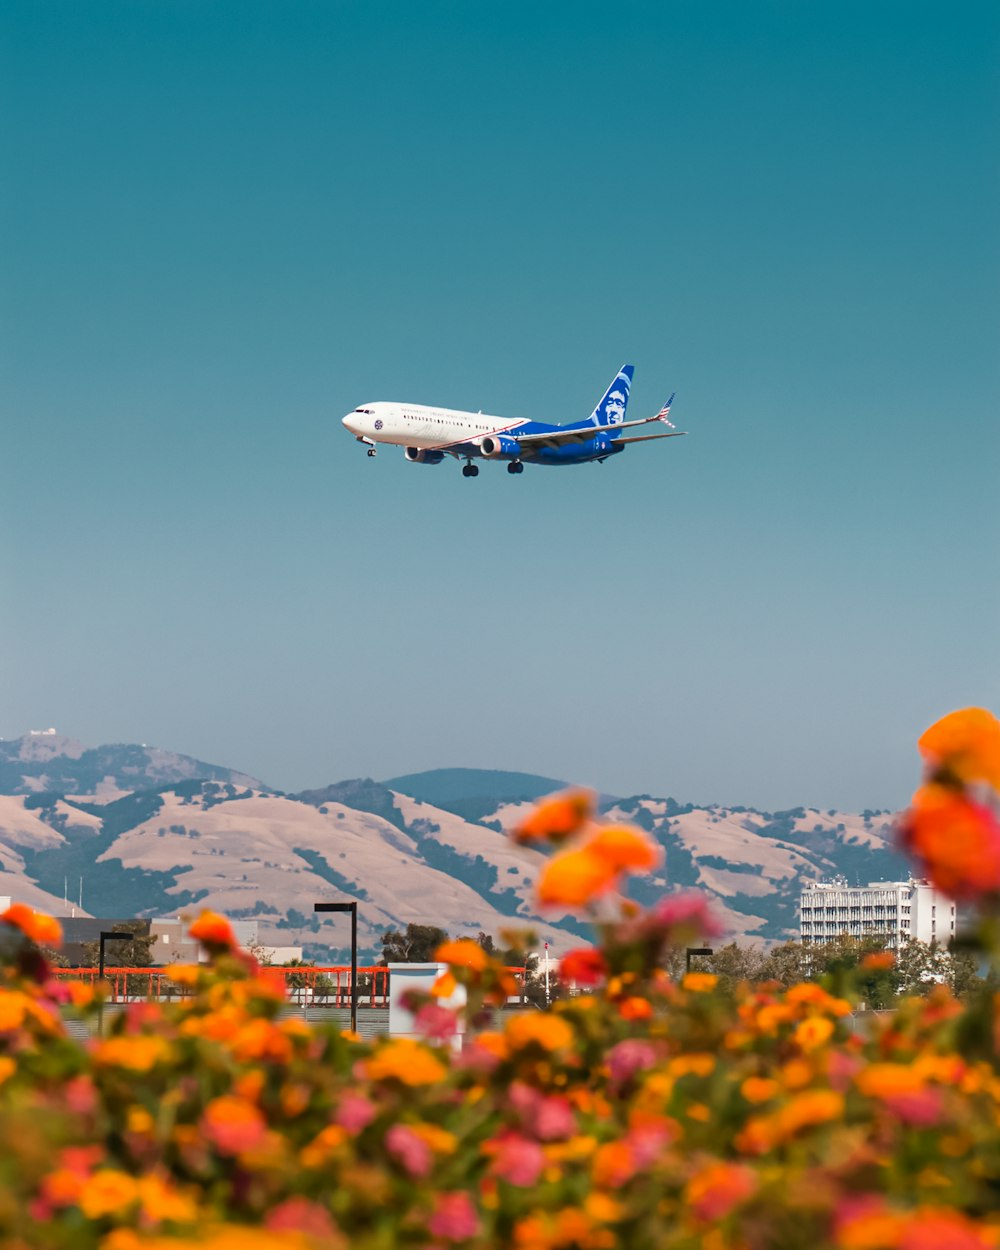 Avion blanc et bleu survolant le champ de fleurs d’oranger pendant la journée